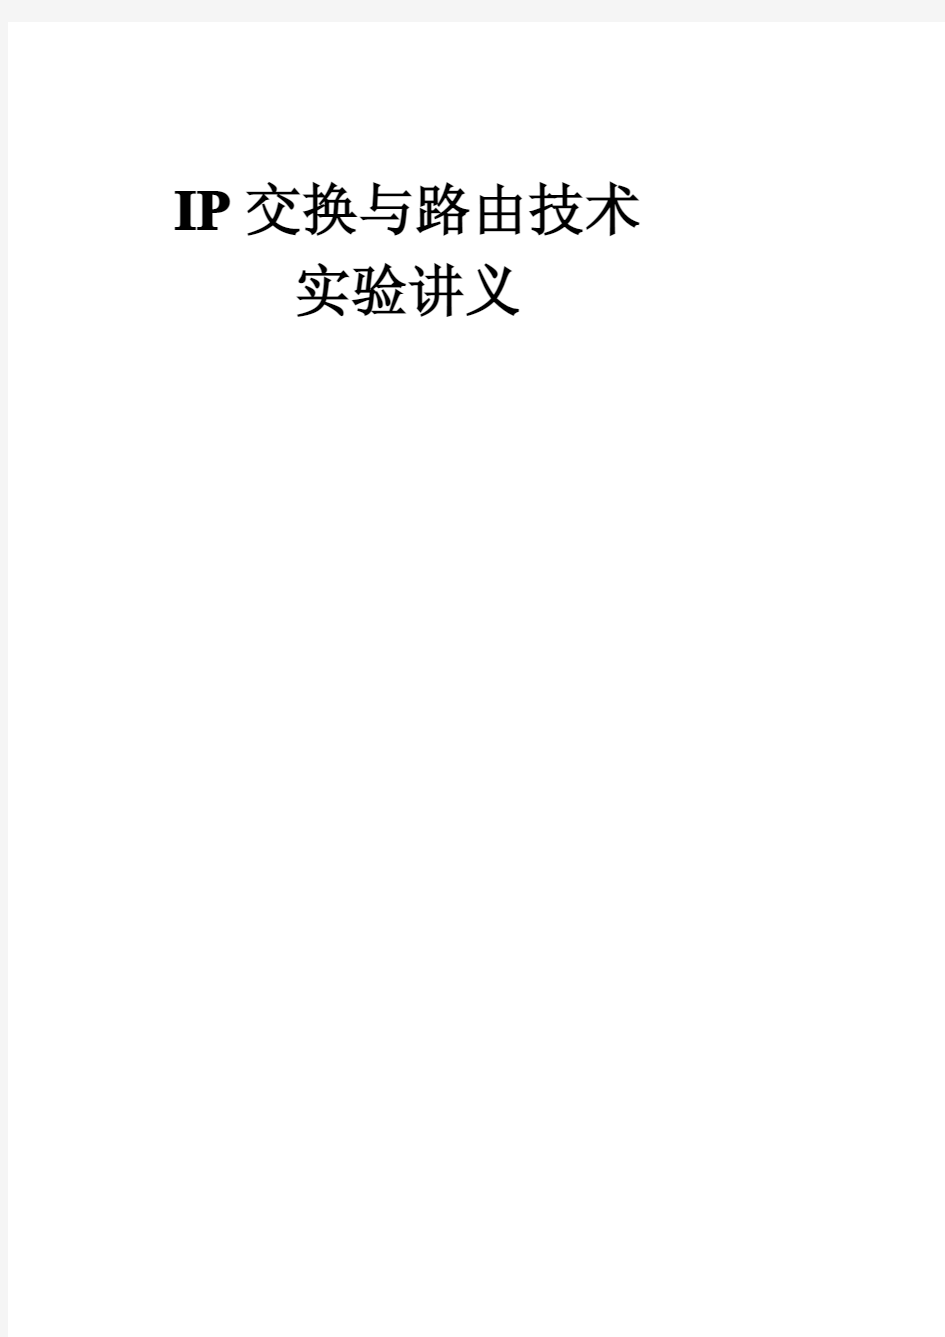 IP交换与路由技术实验讲义(1-16)